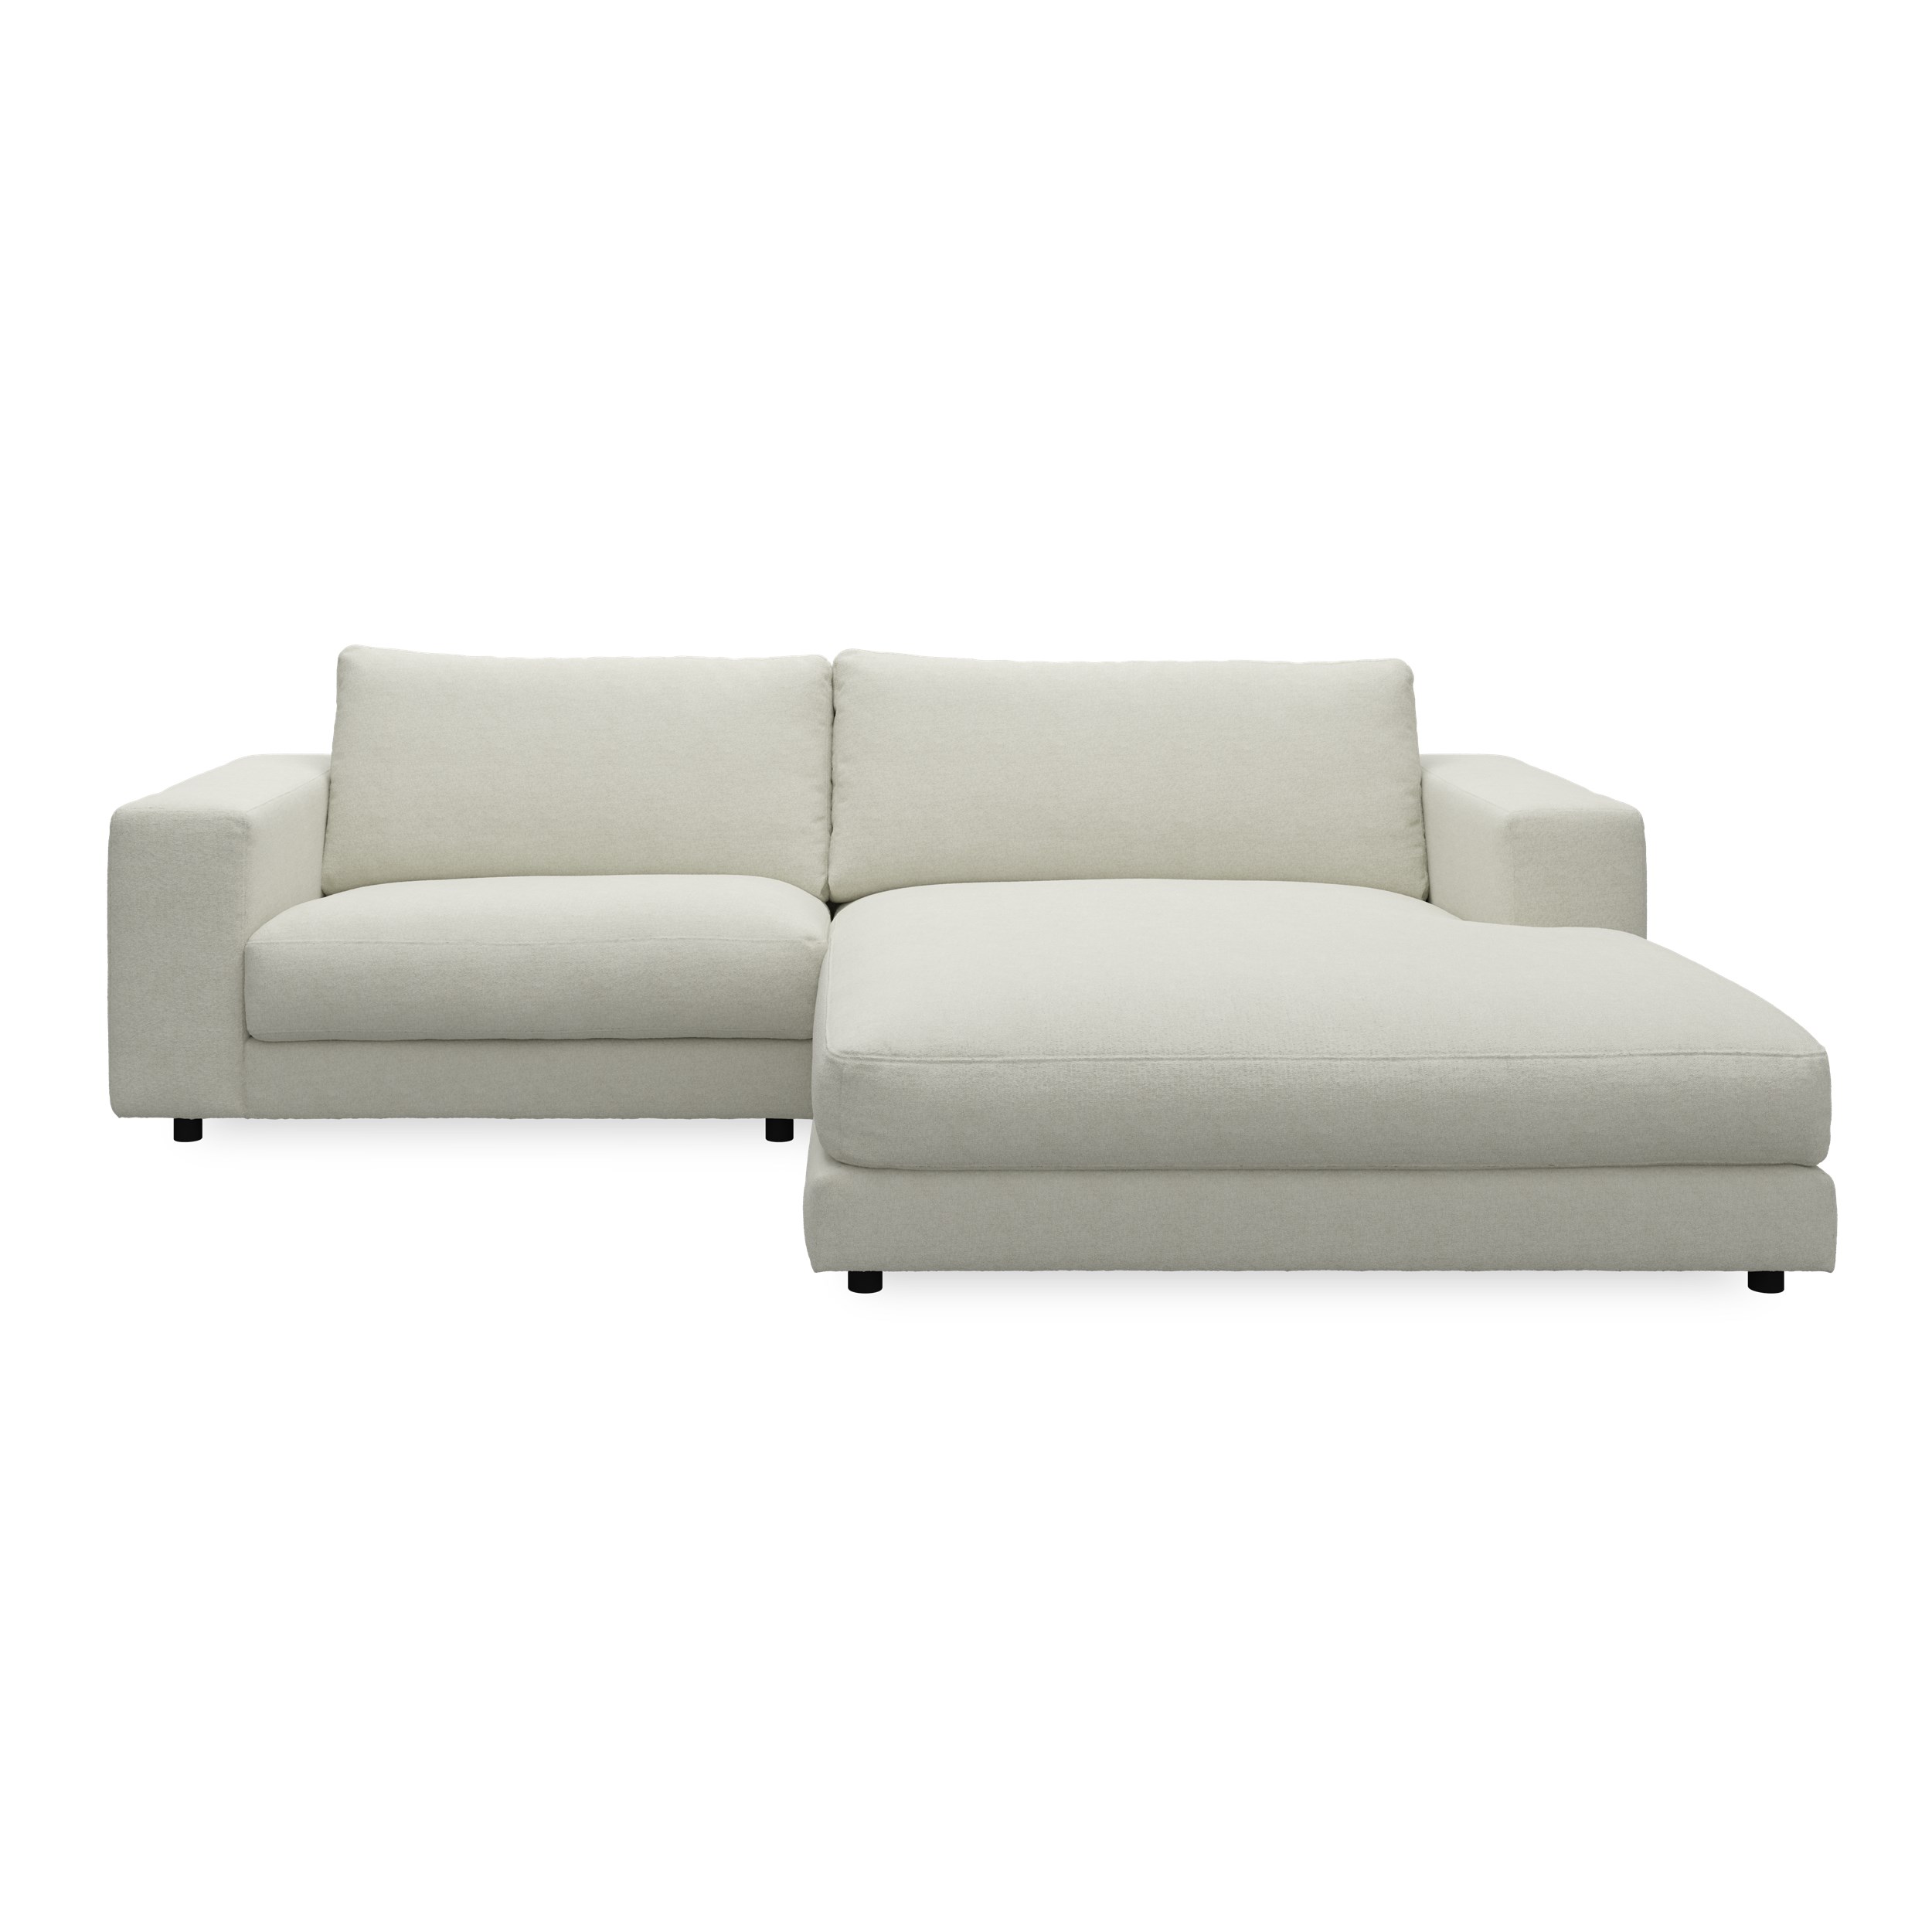 Bennent högervänd soffa med schäslong - Yelda Natur klädsel, ben i svart plast och S:skum/fib/din/sili R:Dun/skum